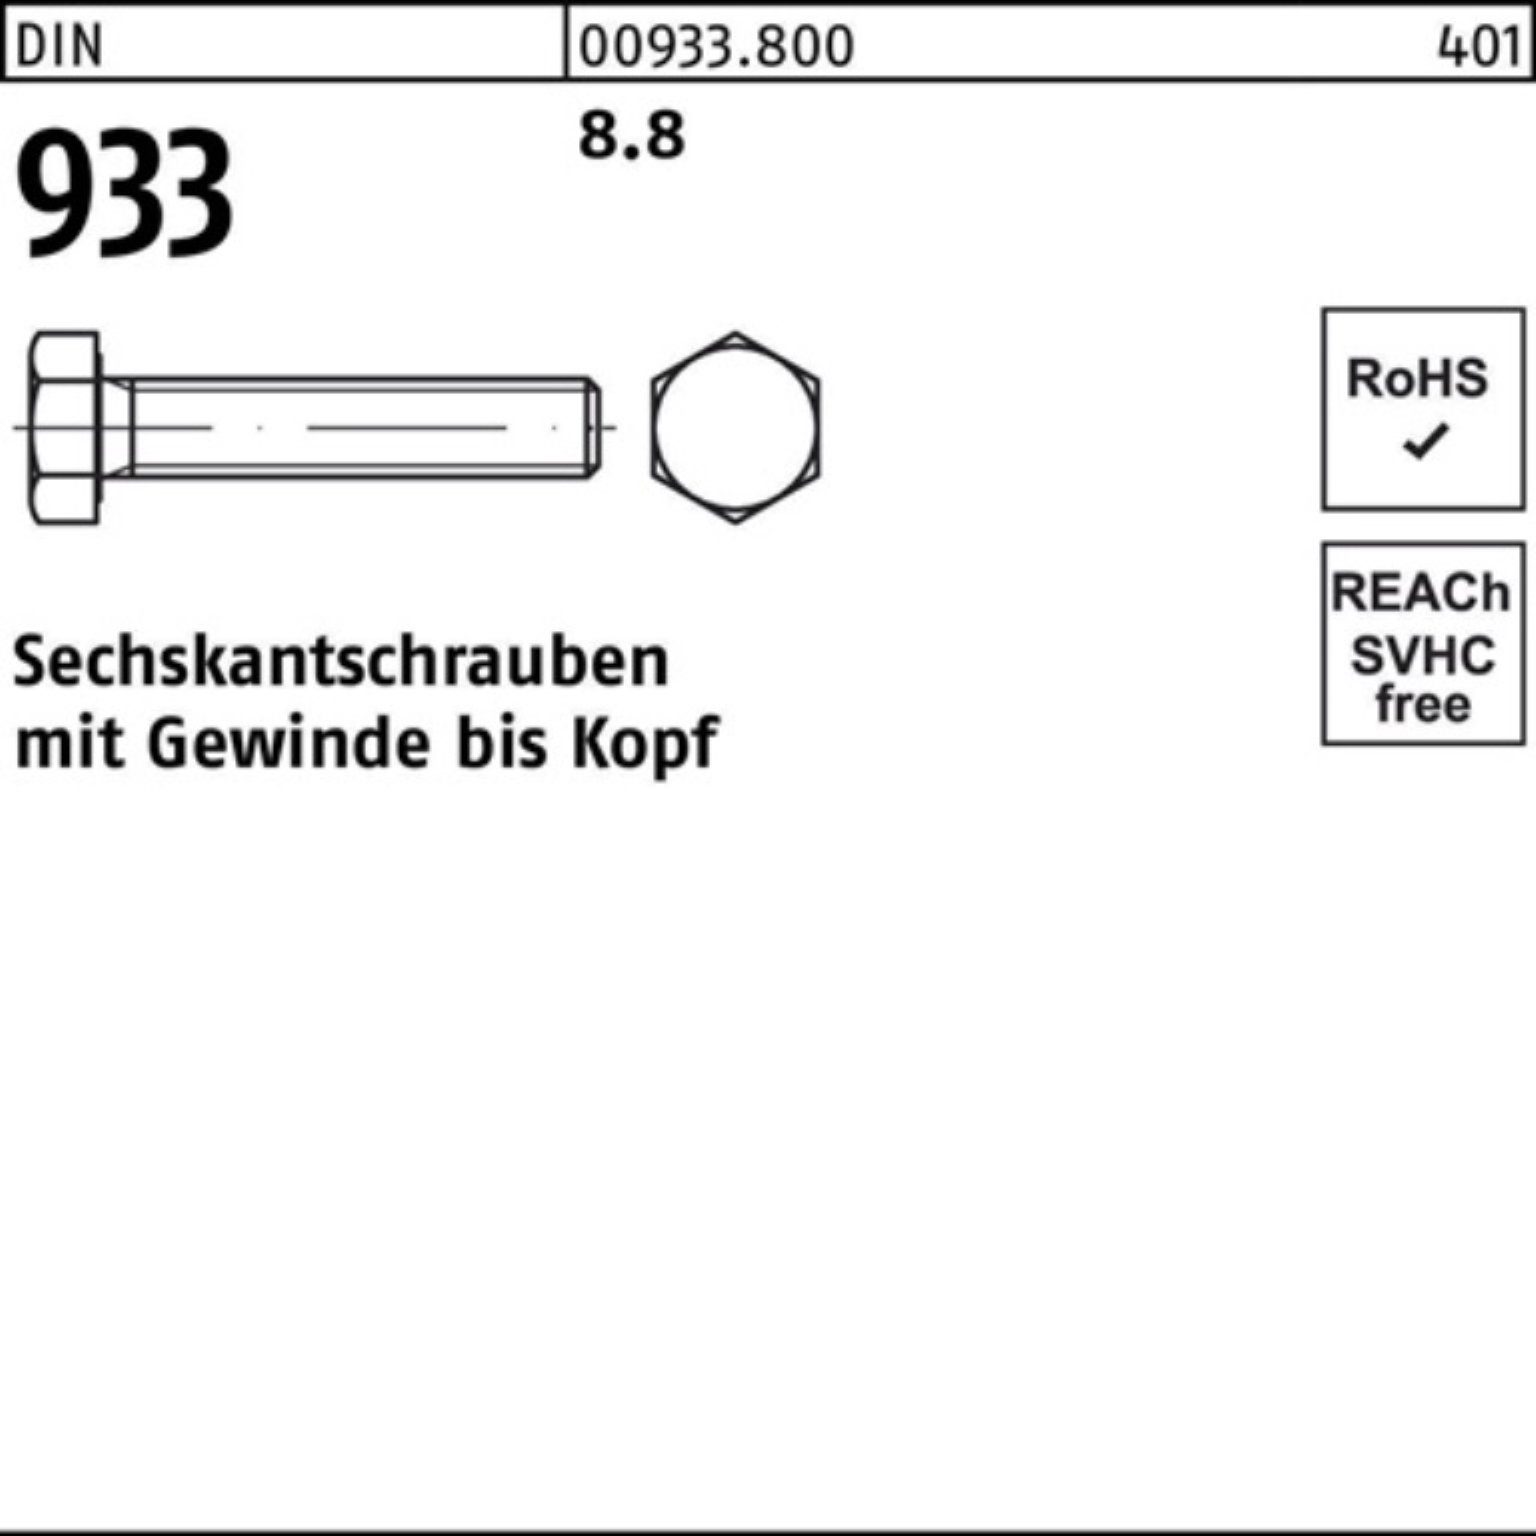 Reyher Sechskantschraube DIN VG 933 160 Sechskantschraube DIN Pack M12x 8.8 Stück 25 933 100er